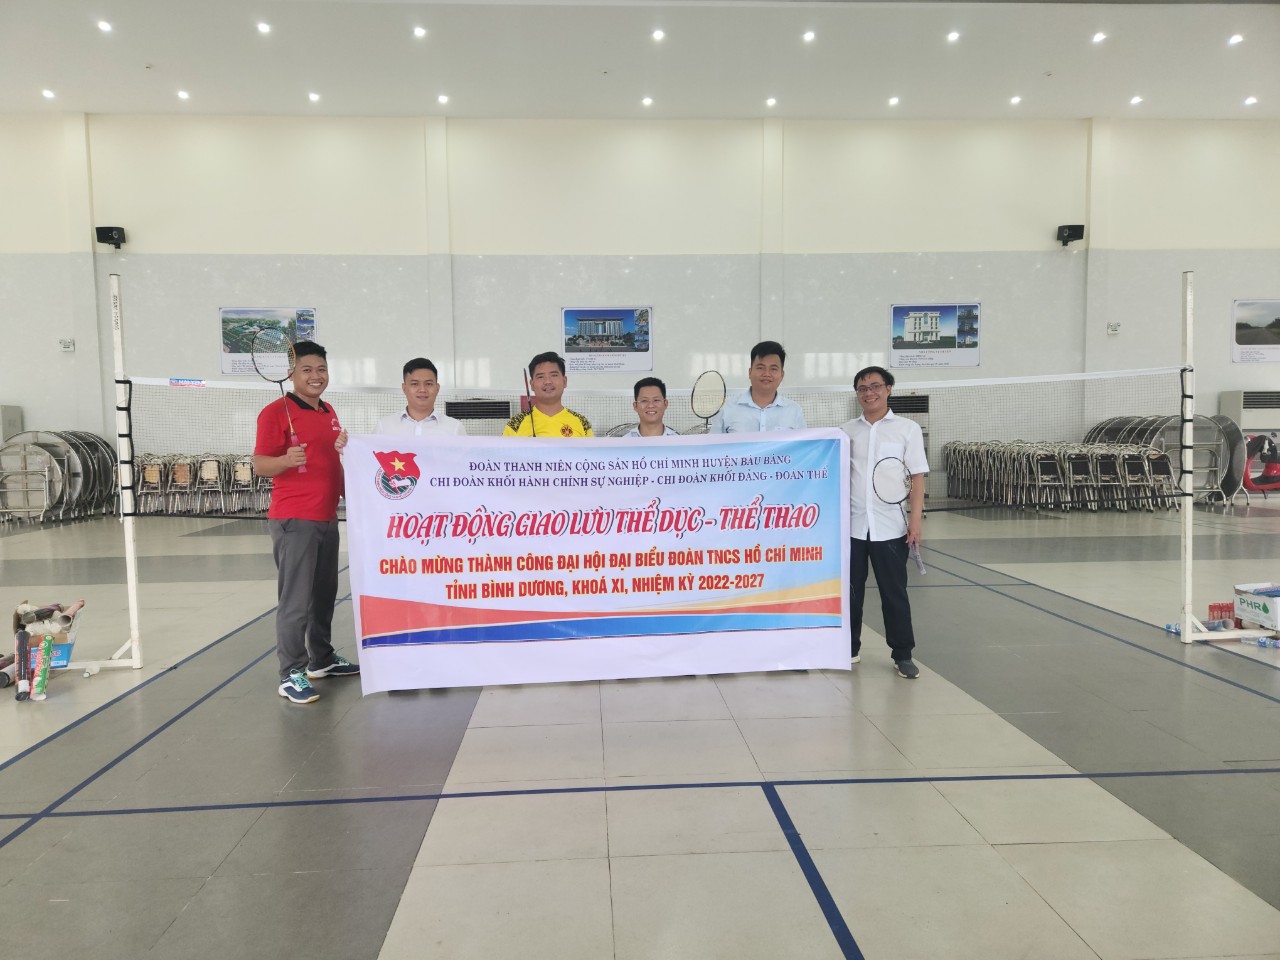 Giao lưu thể thao (Cầu Lông) giữa chi đoàn Khối hành chính sự nghiệp và chi đoàn khối Đảng-Đoàn thể huyện Bàu Bàng